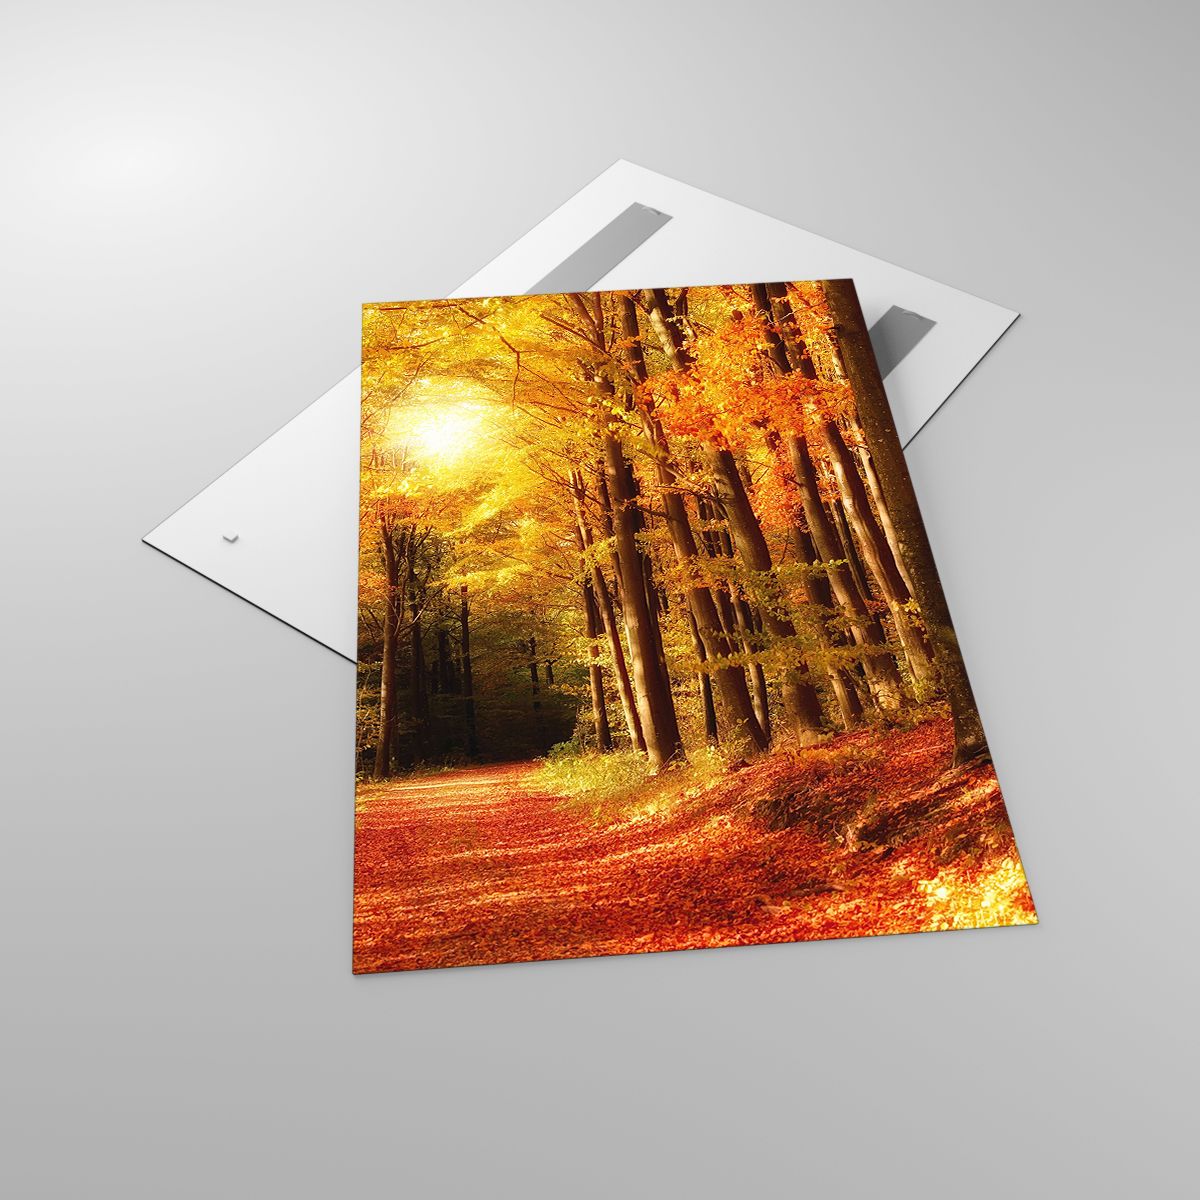 Glasbild Herbst, Glasbild Wald, Glasbild Landschaft, Glasbild Bäume, Glasbild Laub